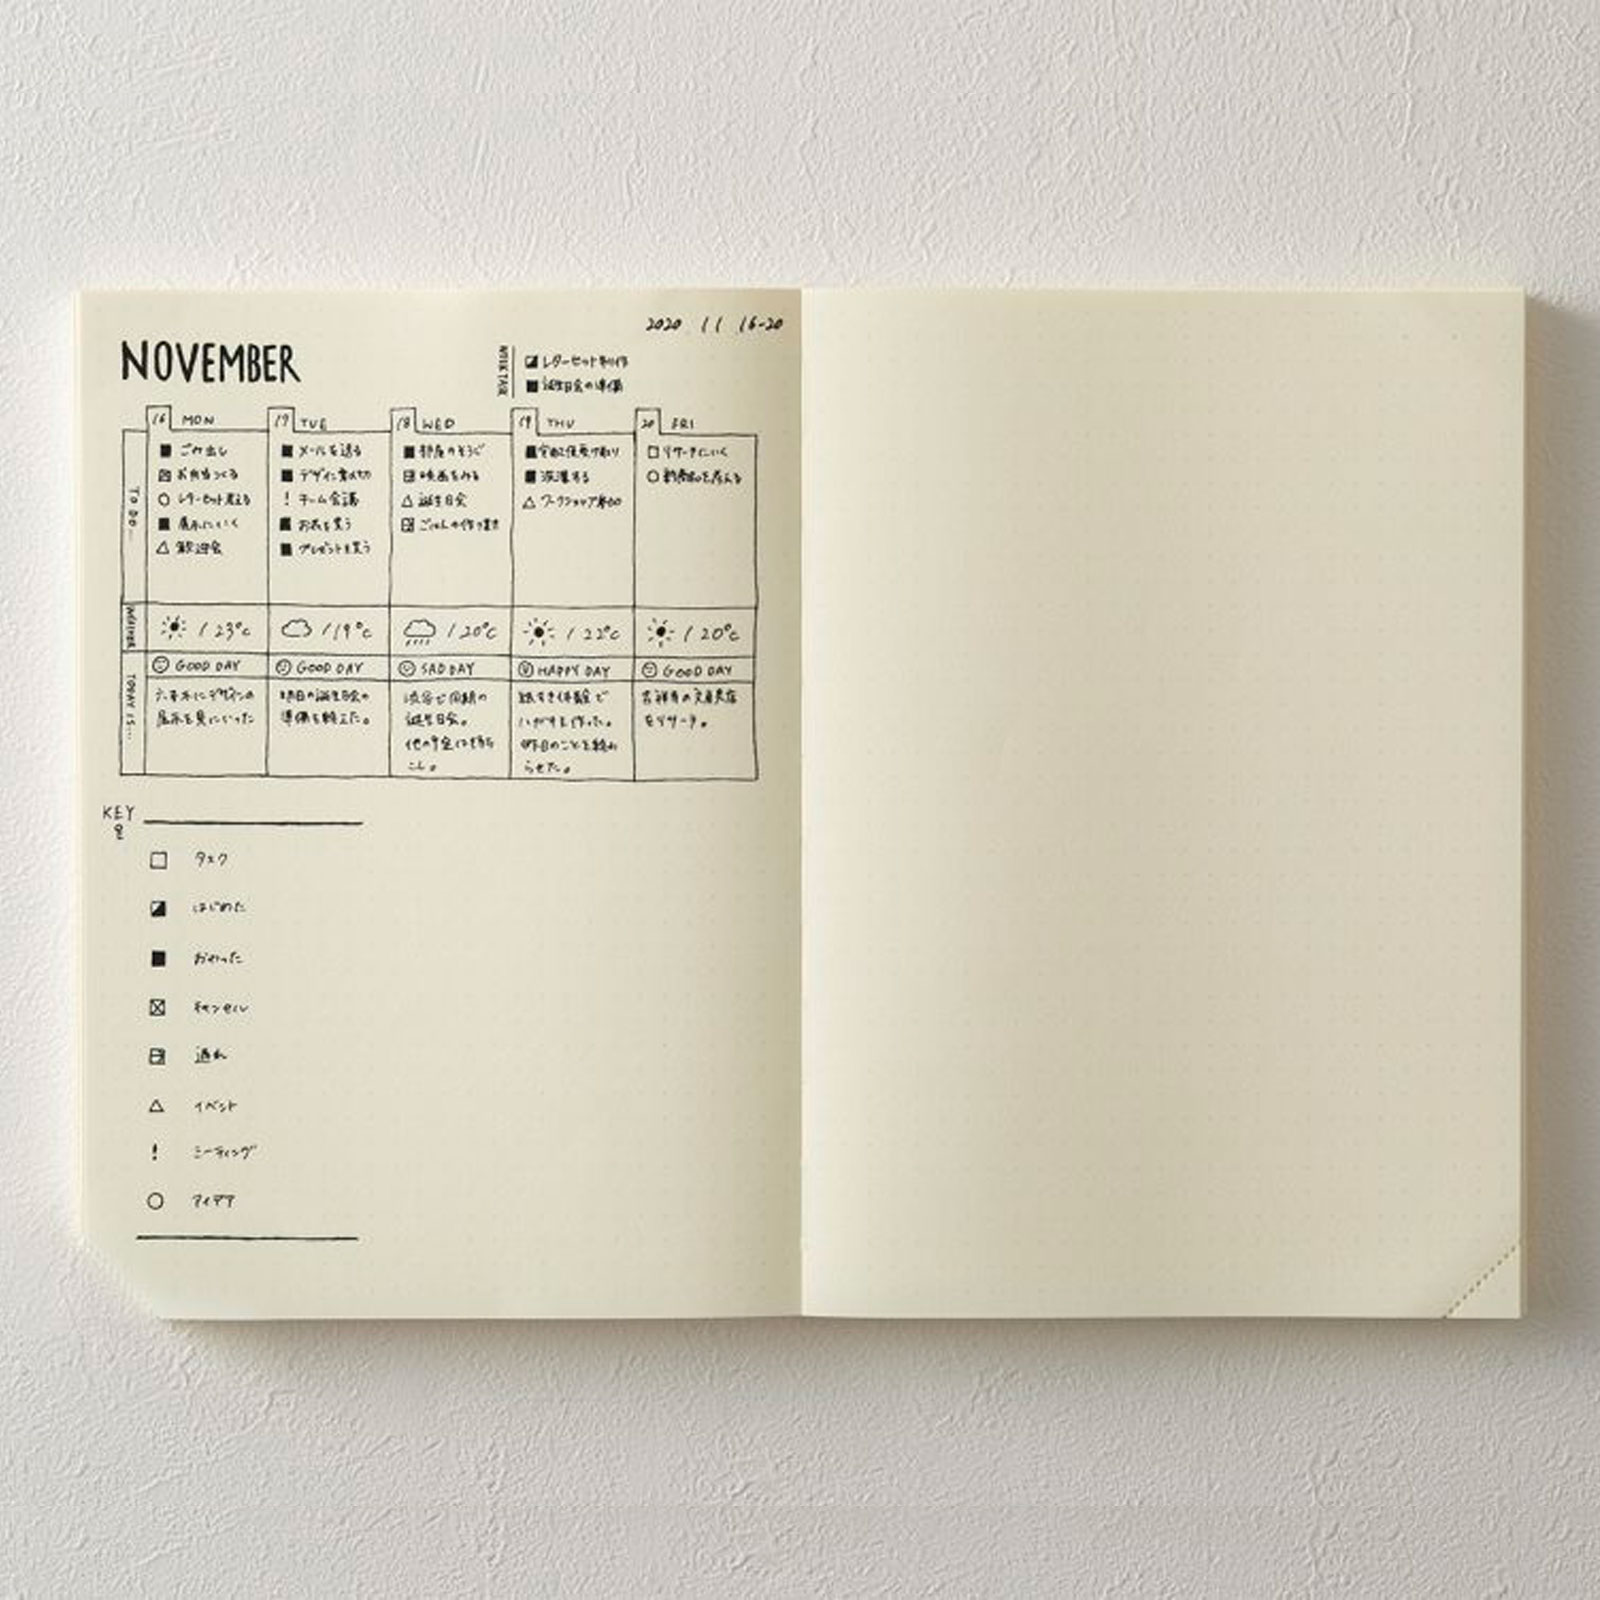 The Original leather folder insert for Midori Traveler's Notebooks